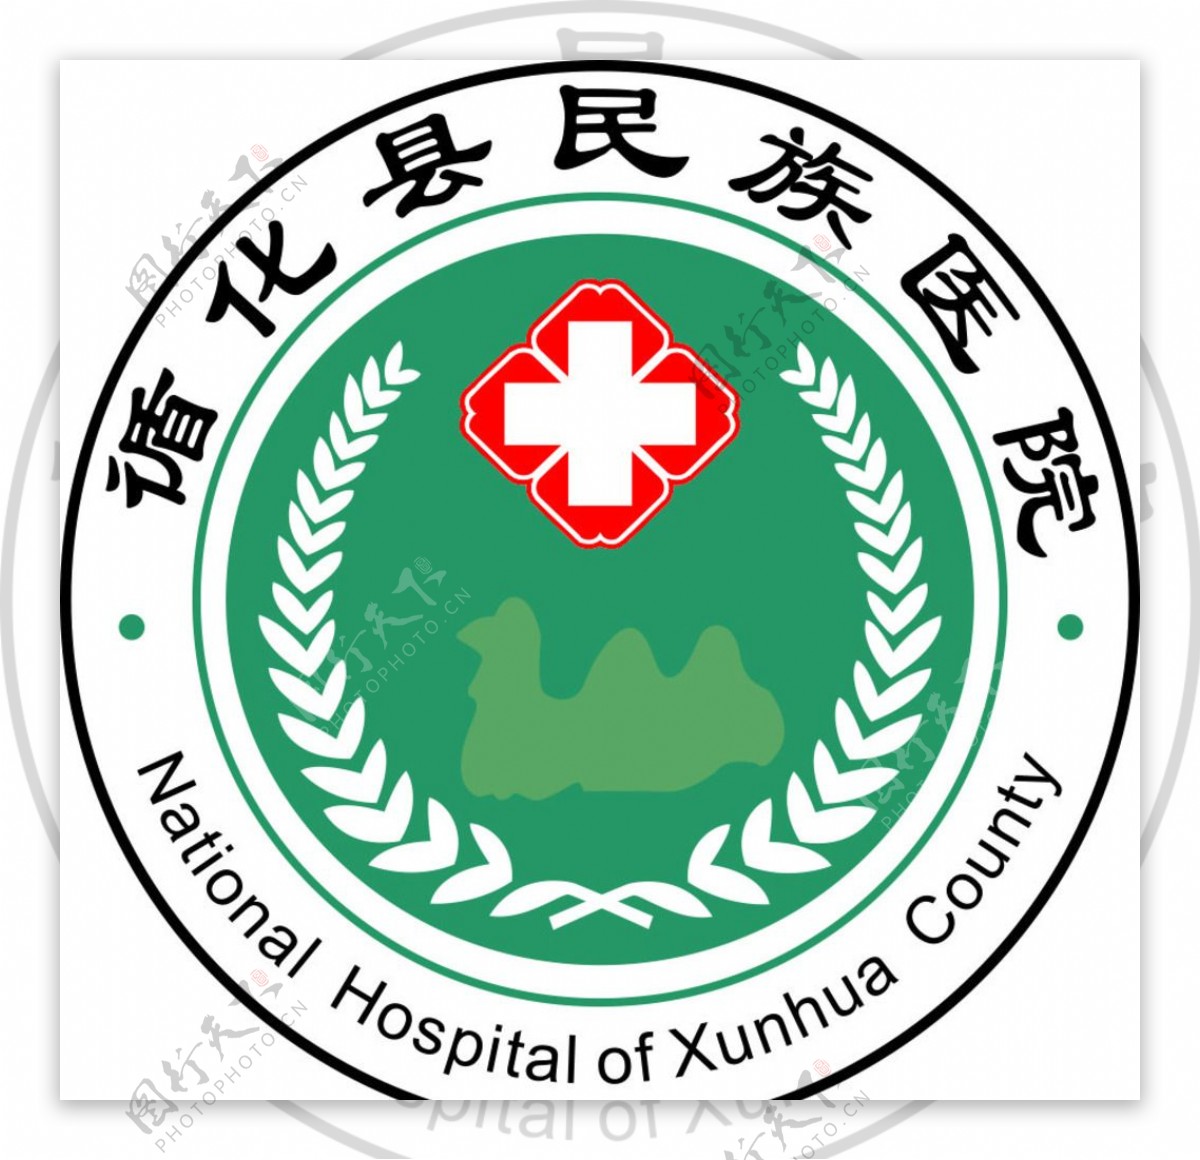 循化县民族医院标志图片